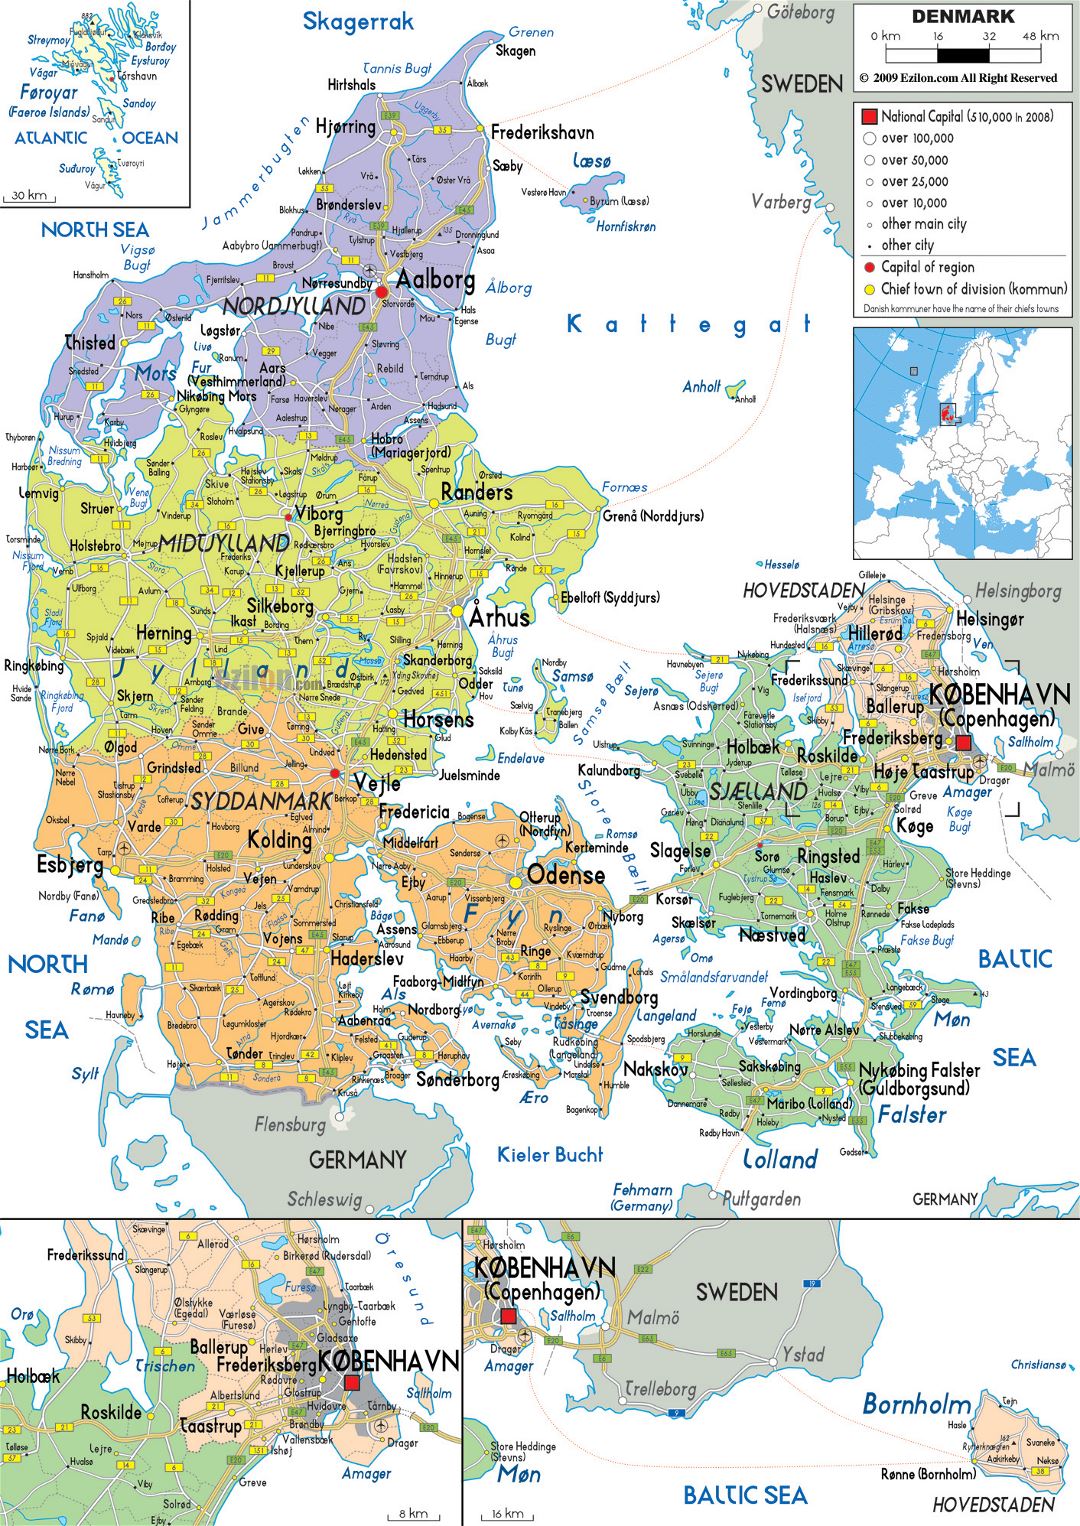 Mapa político y administrativo grande de Dinamarca con carreteras, ciudades y aeropuertos